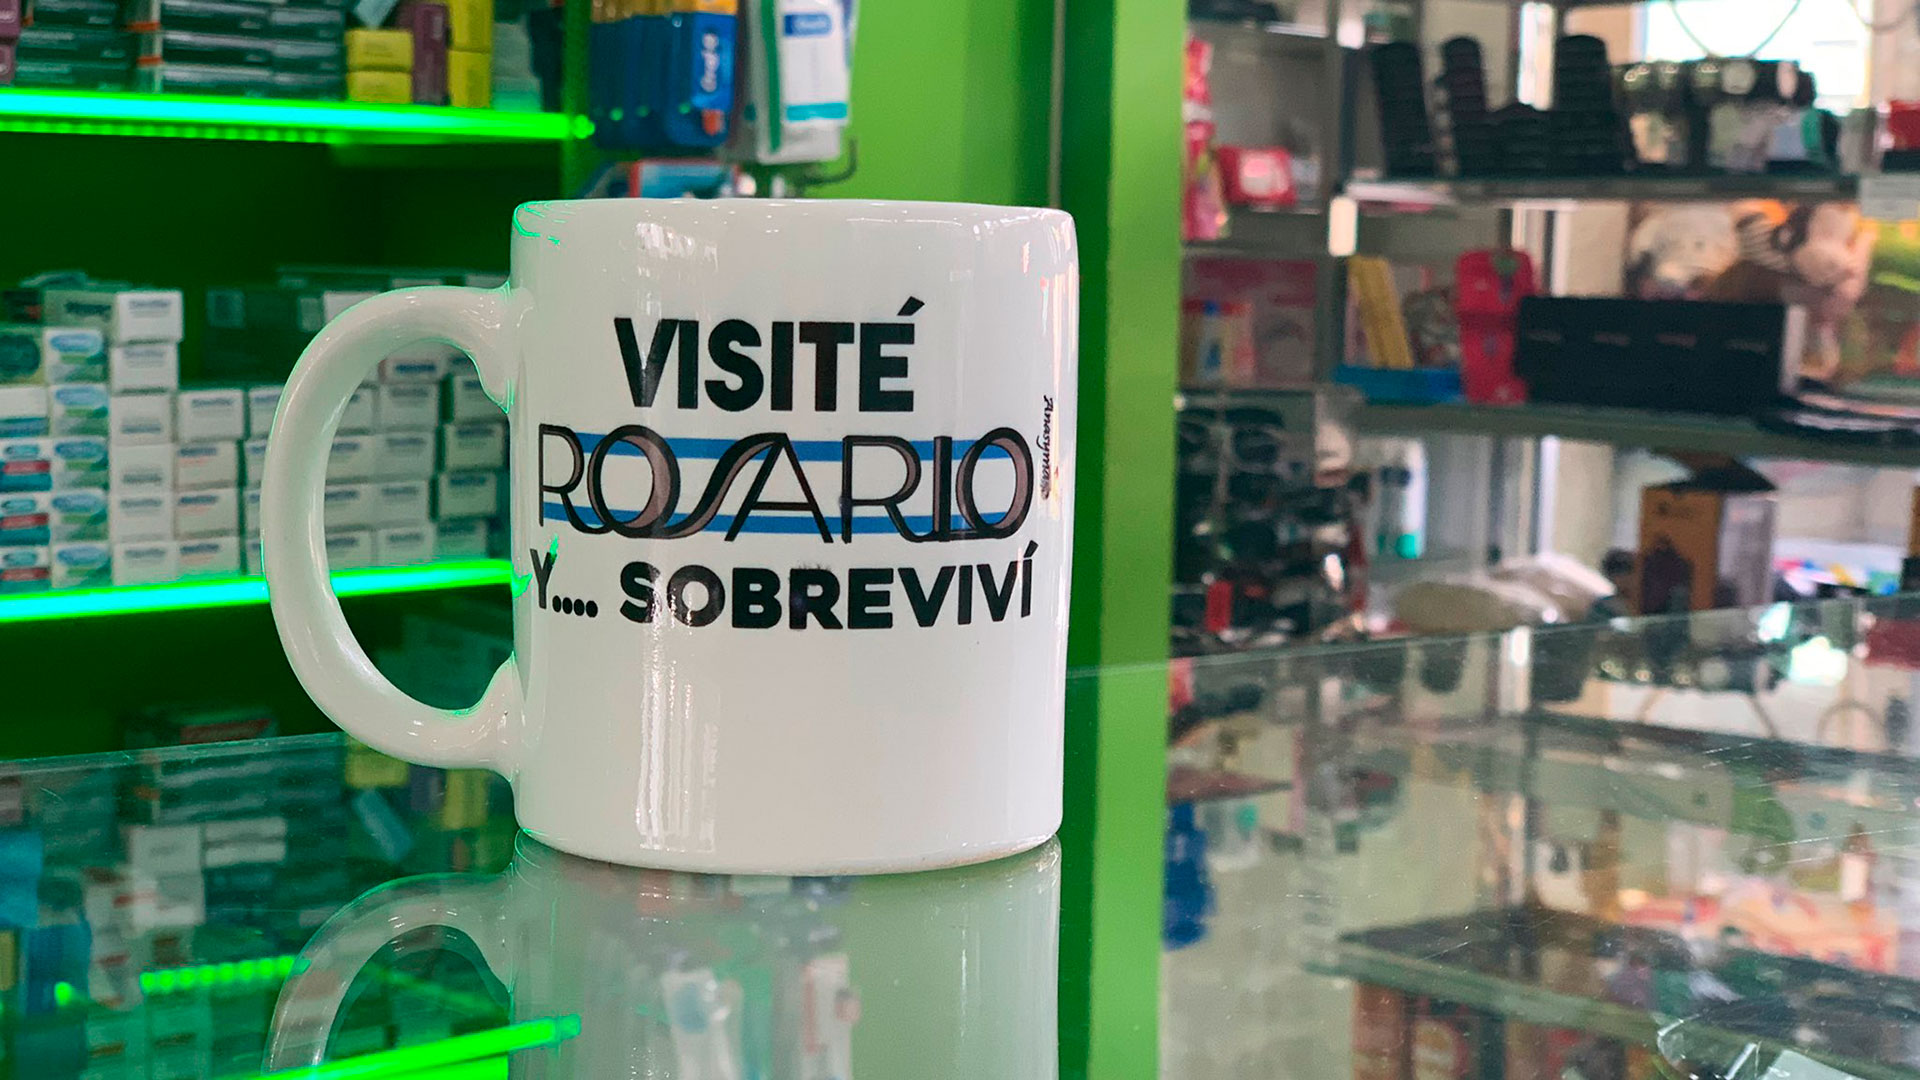 “Visité Rosario y... sobreviví”: la polémica leyenda en una taza que venden en la ciudad santafesina